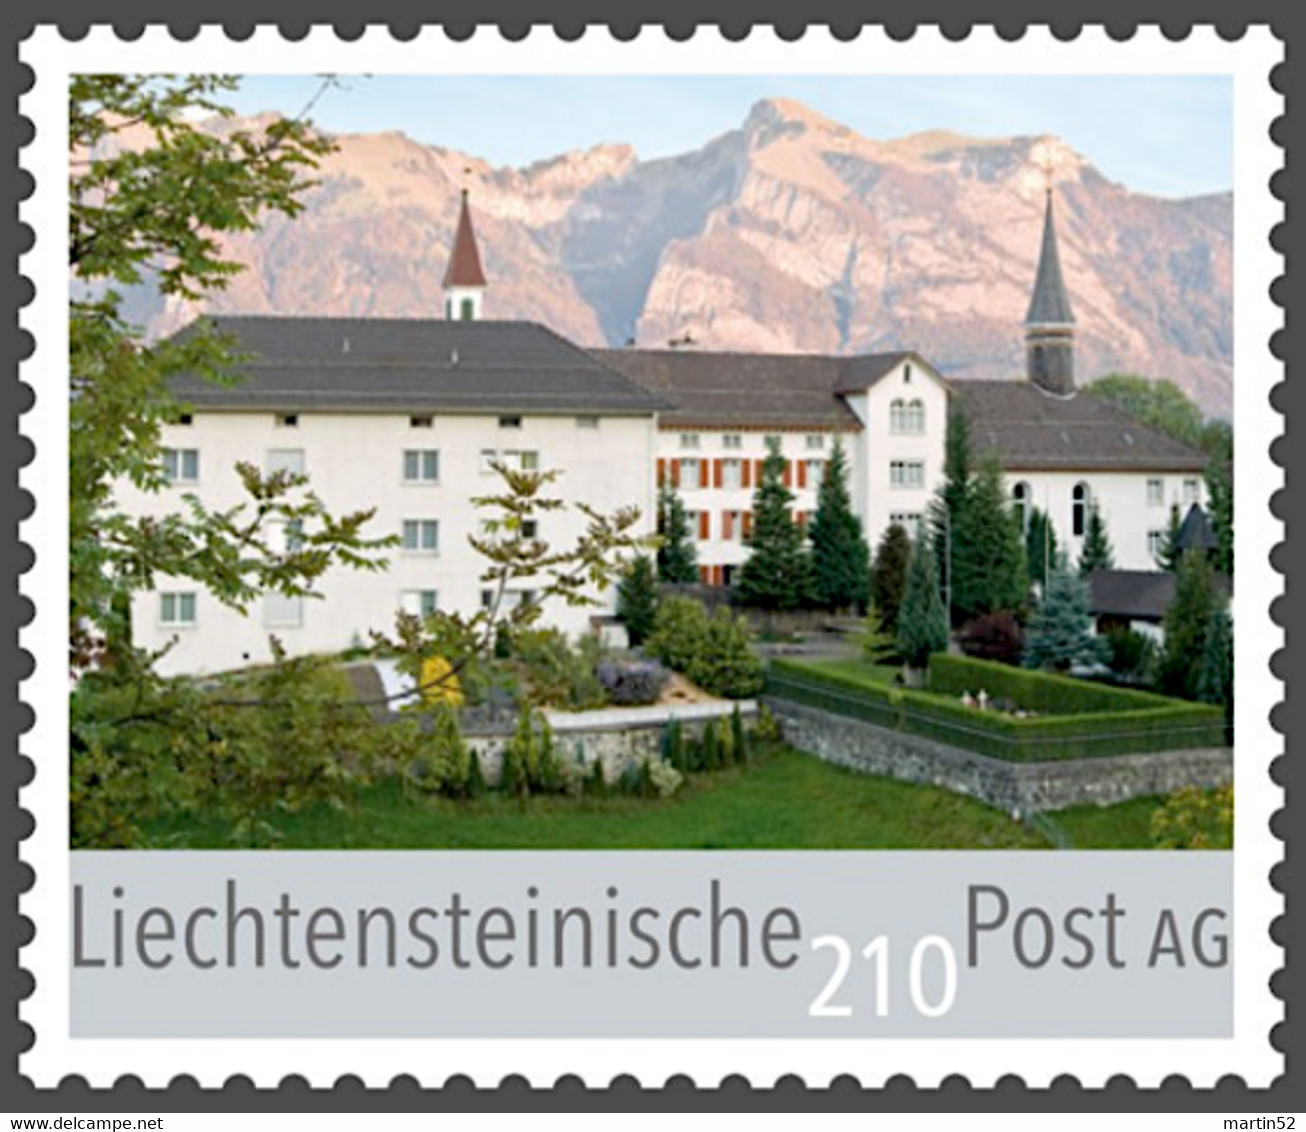 LIECHTENSTEIN 2022: "neue Taxen" Bühlkappile Mauren 185 / Kloster Schellenberg 210 / Rofenberg Kapelle Eschen 115 - Unused Stamps